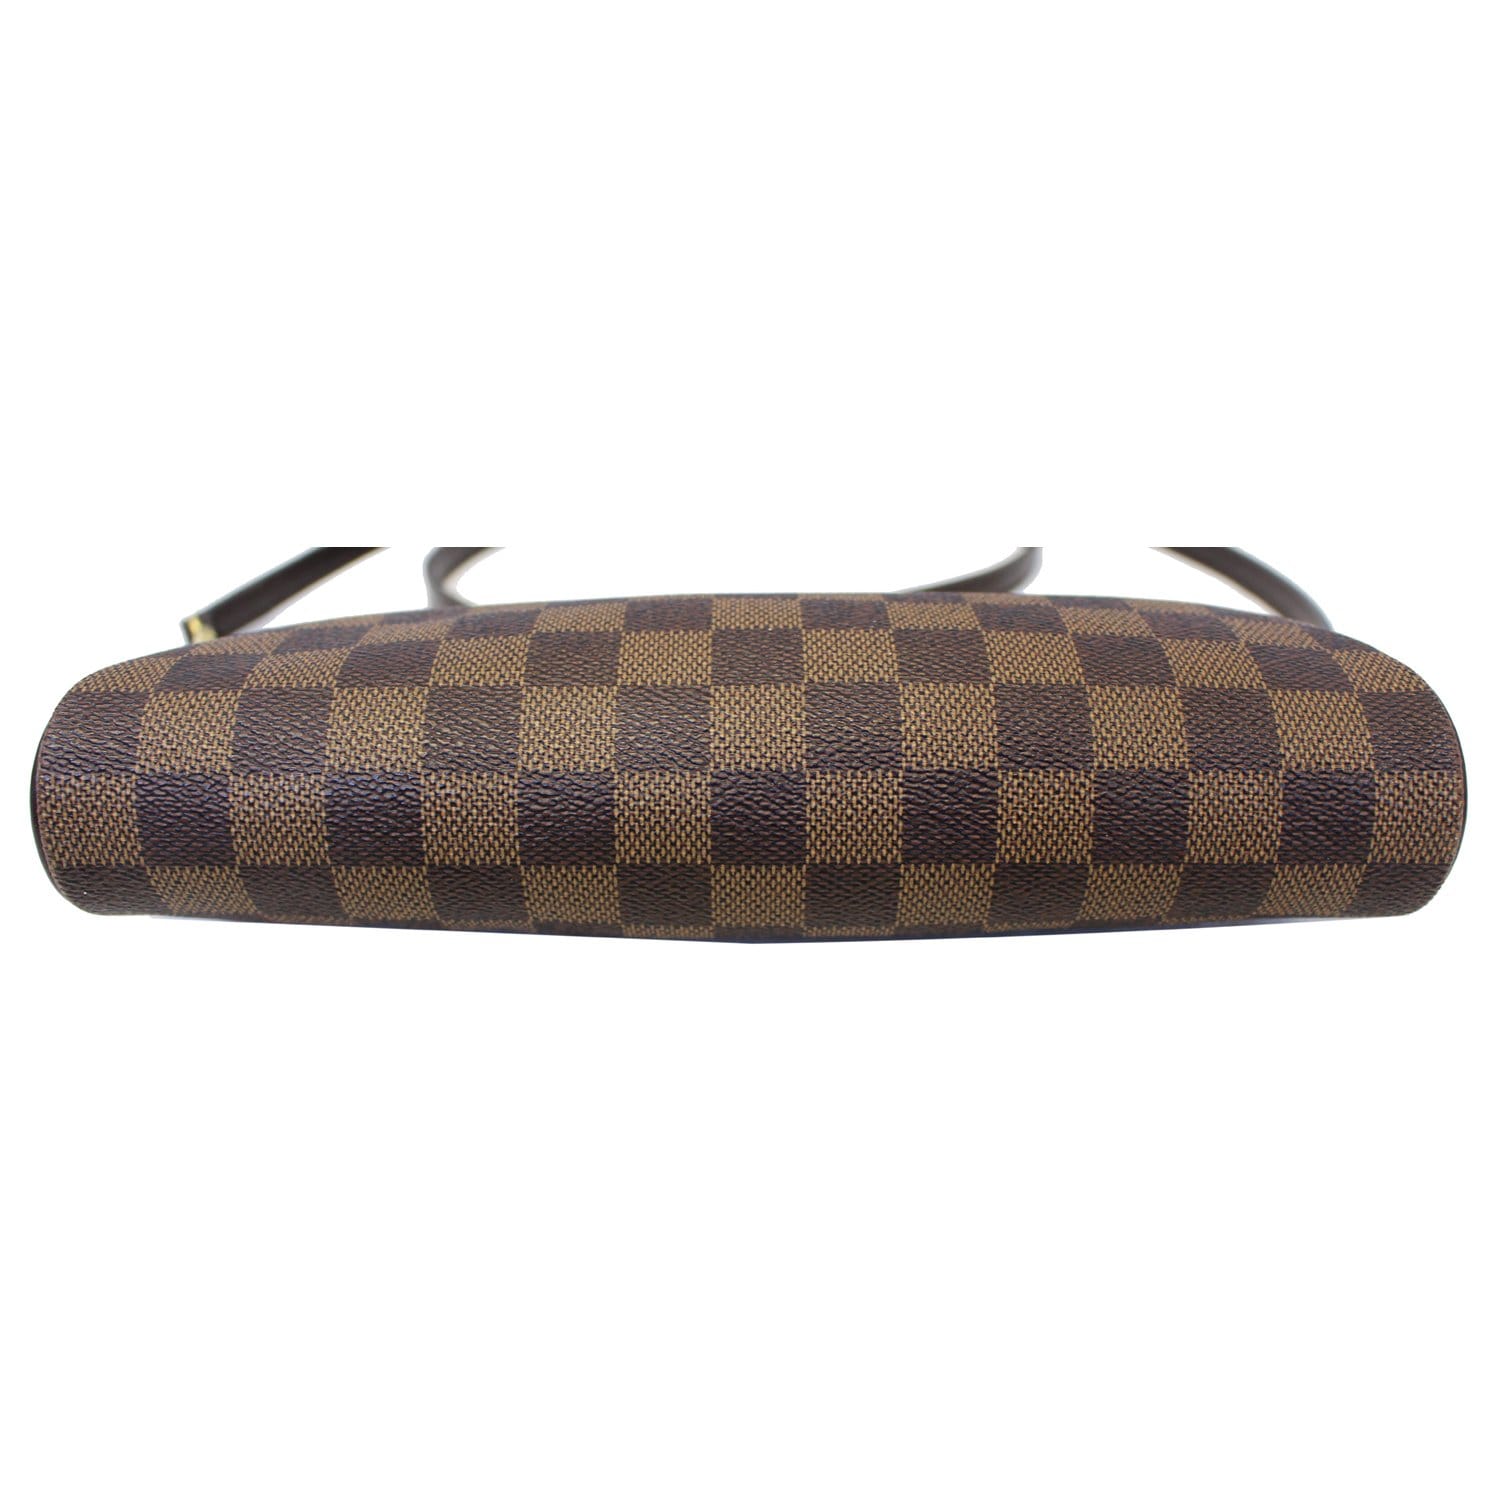 Eva cloth clutch bag Louis Vuitton Brown in Cloth - 35606537